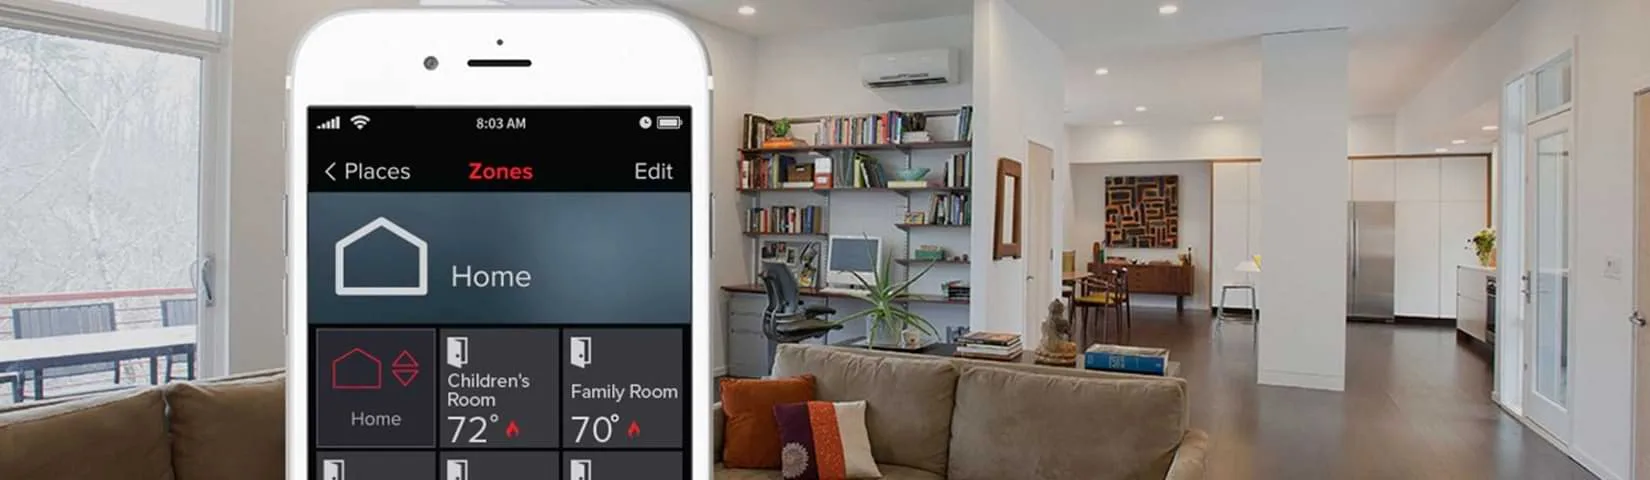 Smart home temperature control app.